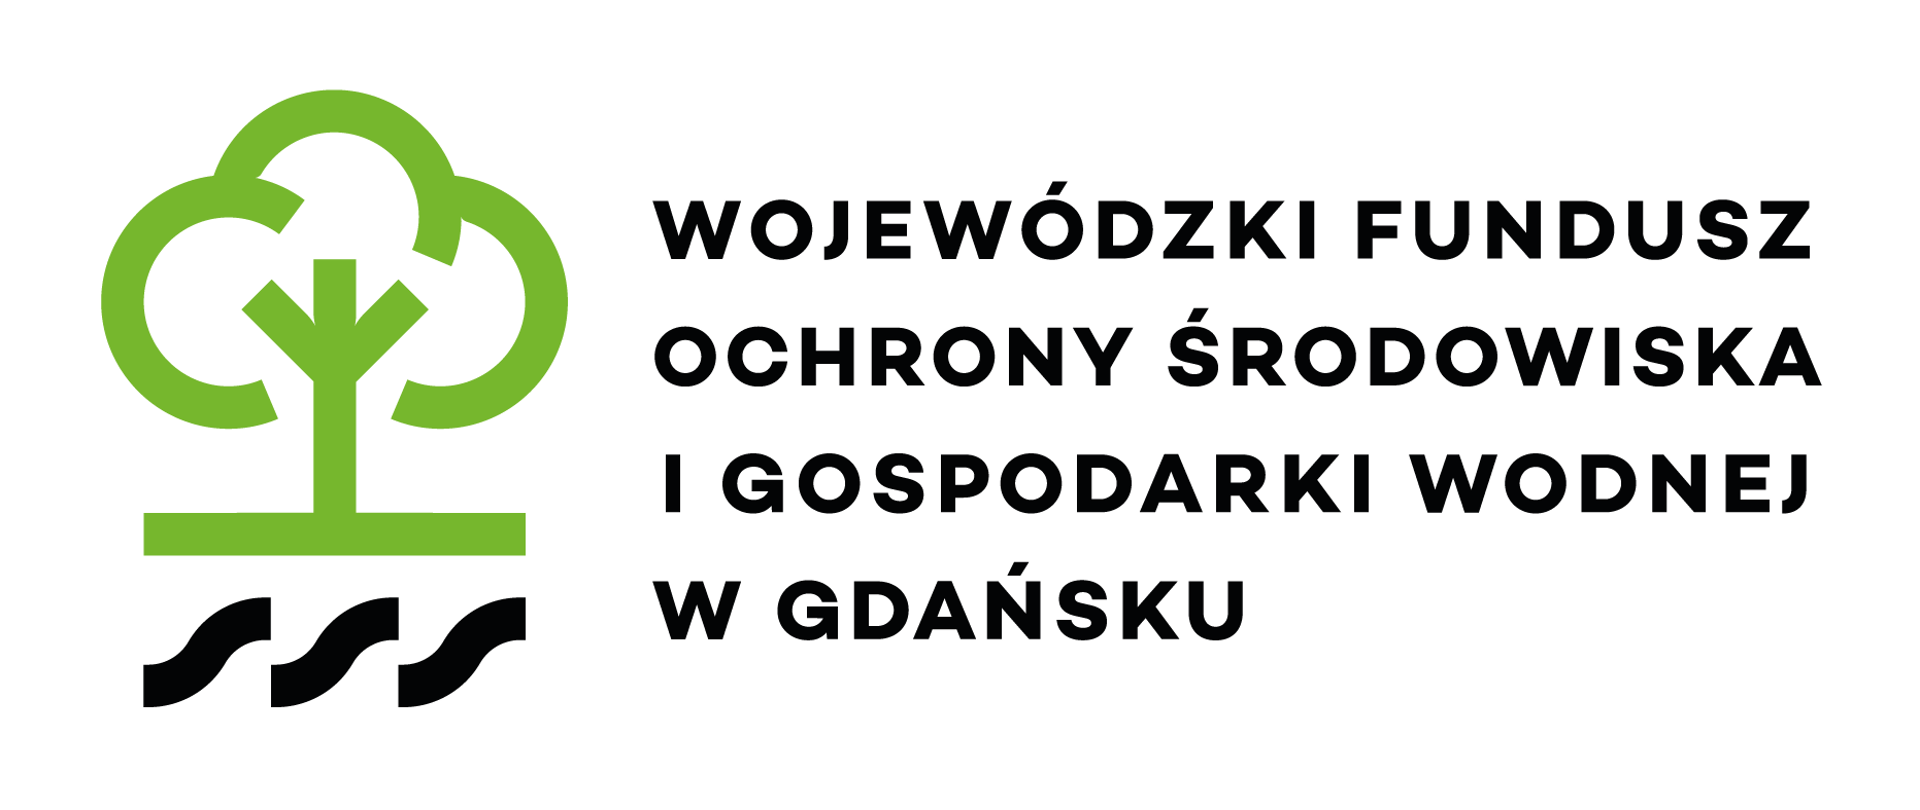 Prosty rysunek drzewa, obok niego tekst: "Wojewódzki Fundusz Ochrony Środowiska i Gospodarki Wodnej w Gdańsku"